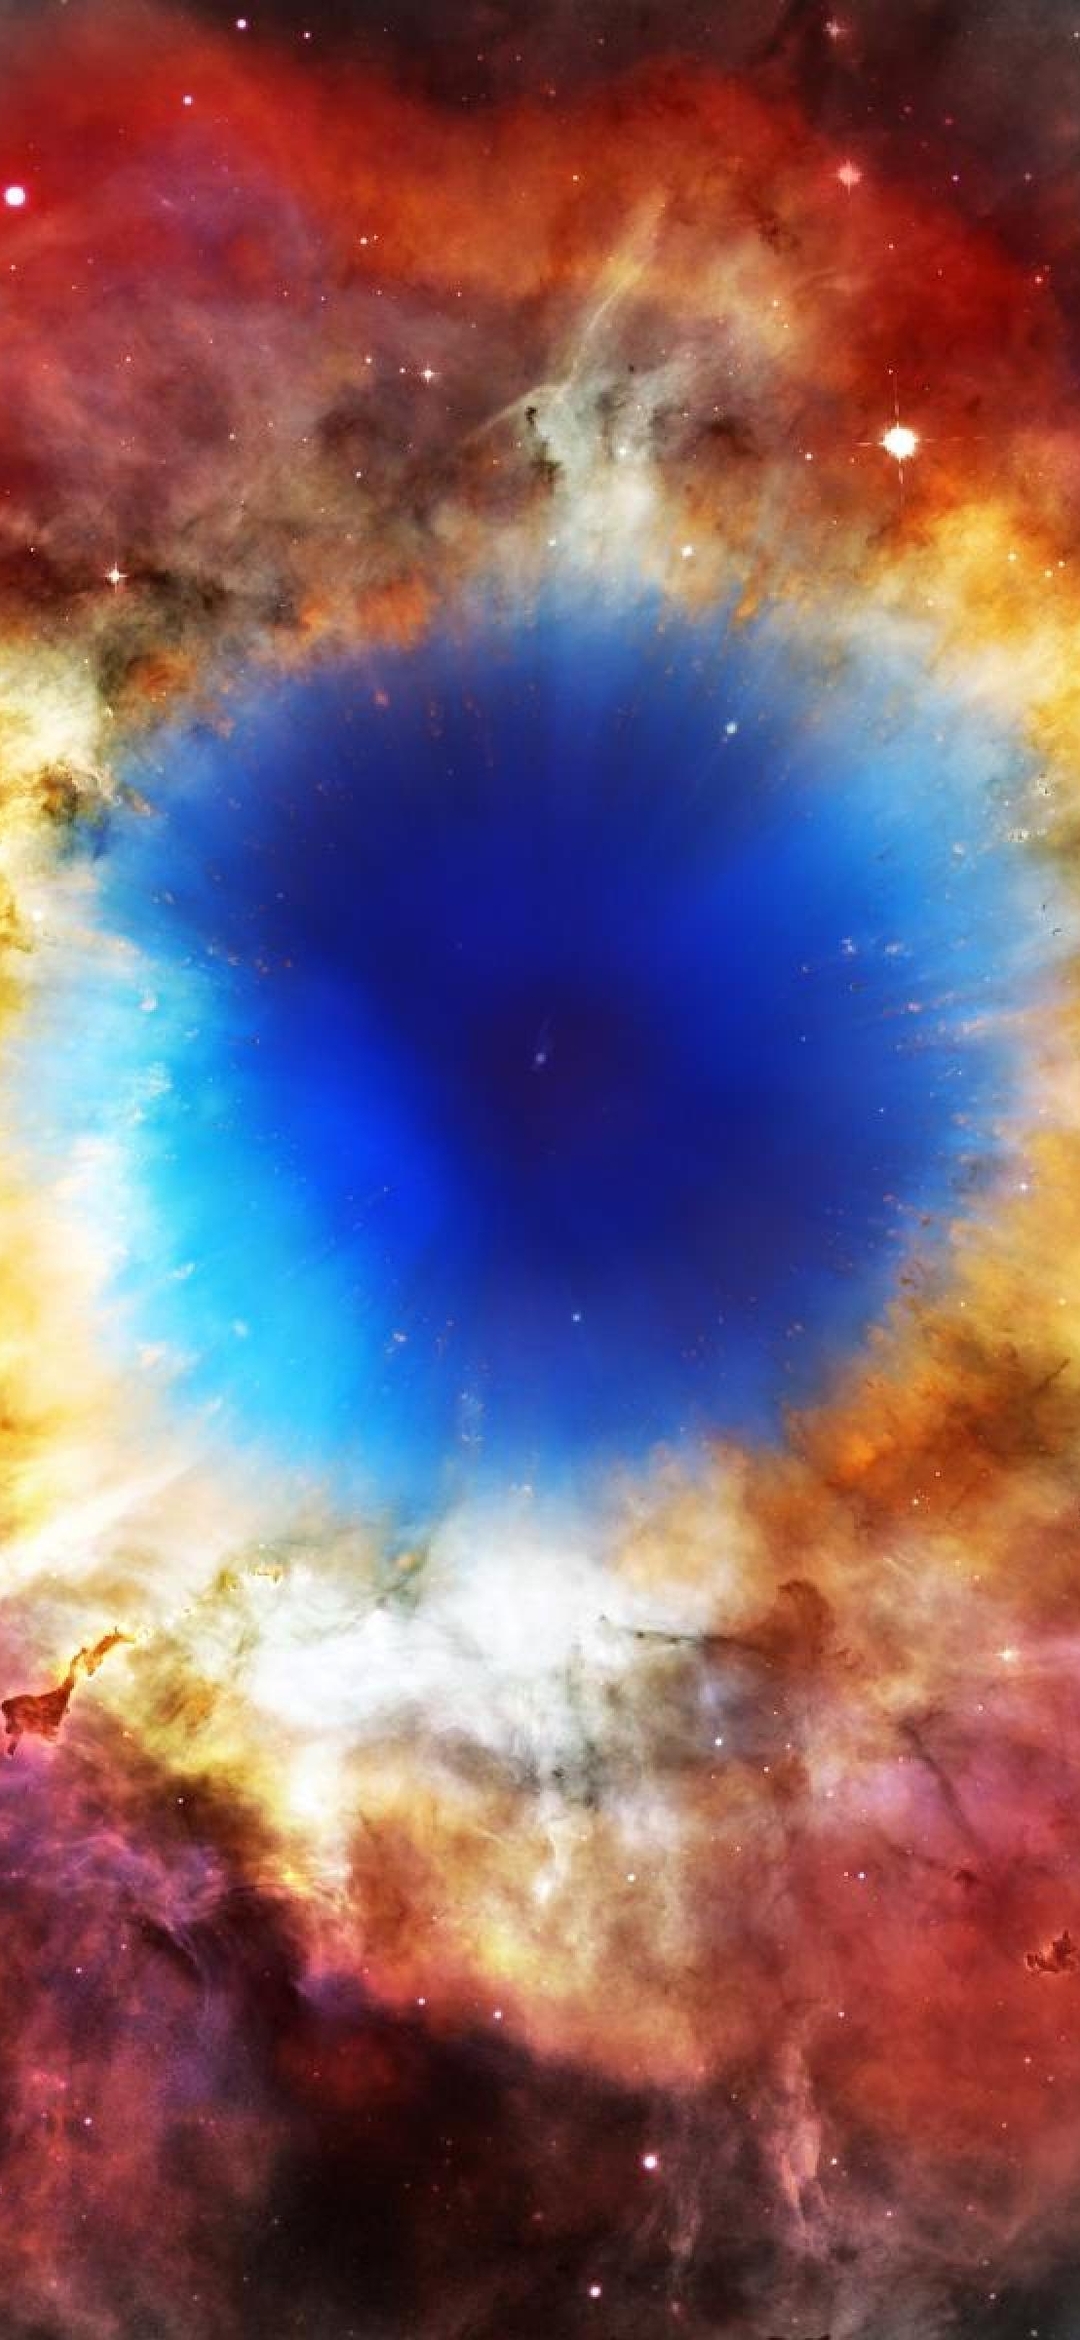 Картинка: Туманность, взрыв, свет, газ, вспышка, излучение, звезда, белый карлик